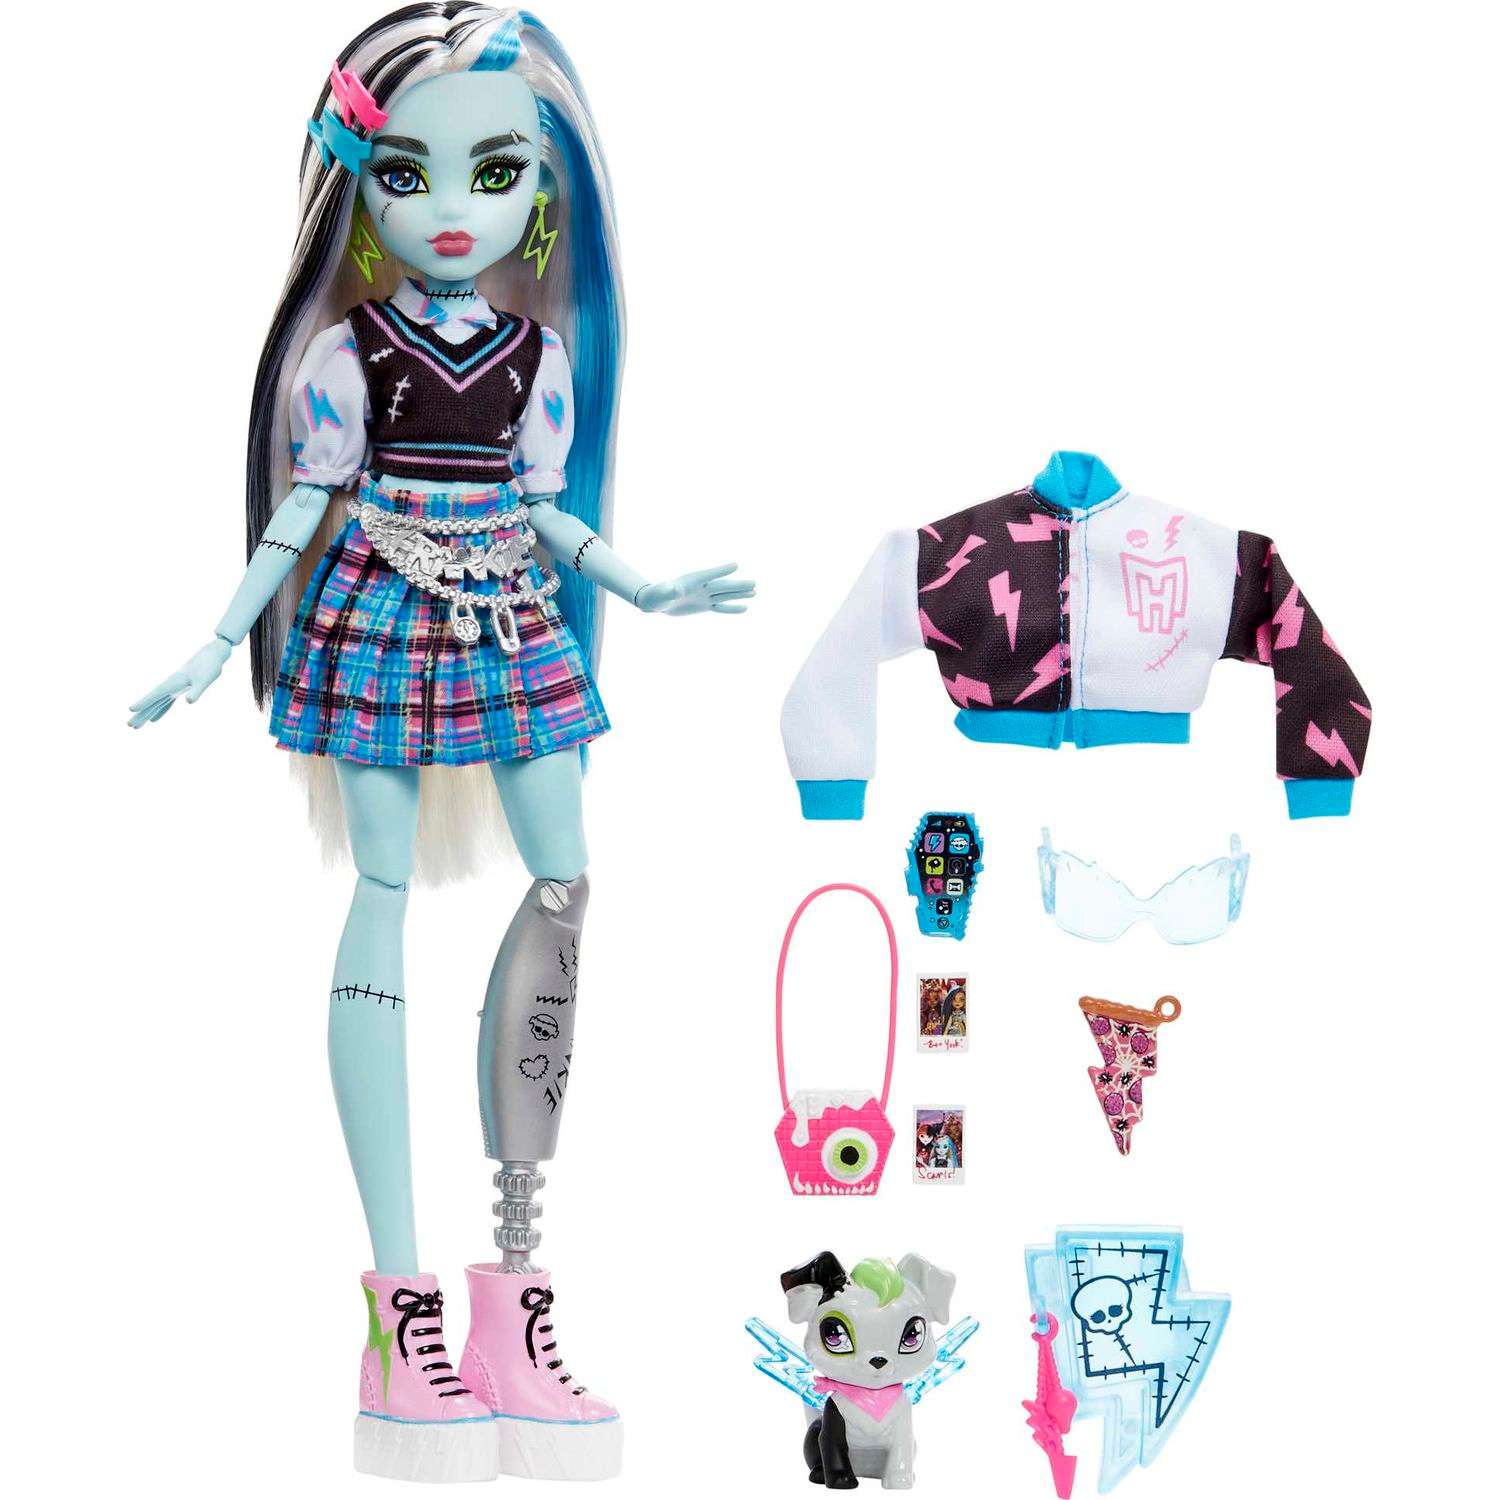 Купить одежду для кукол Монстер Хай по доступной цене в интернет-магазине